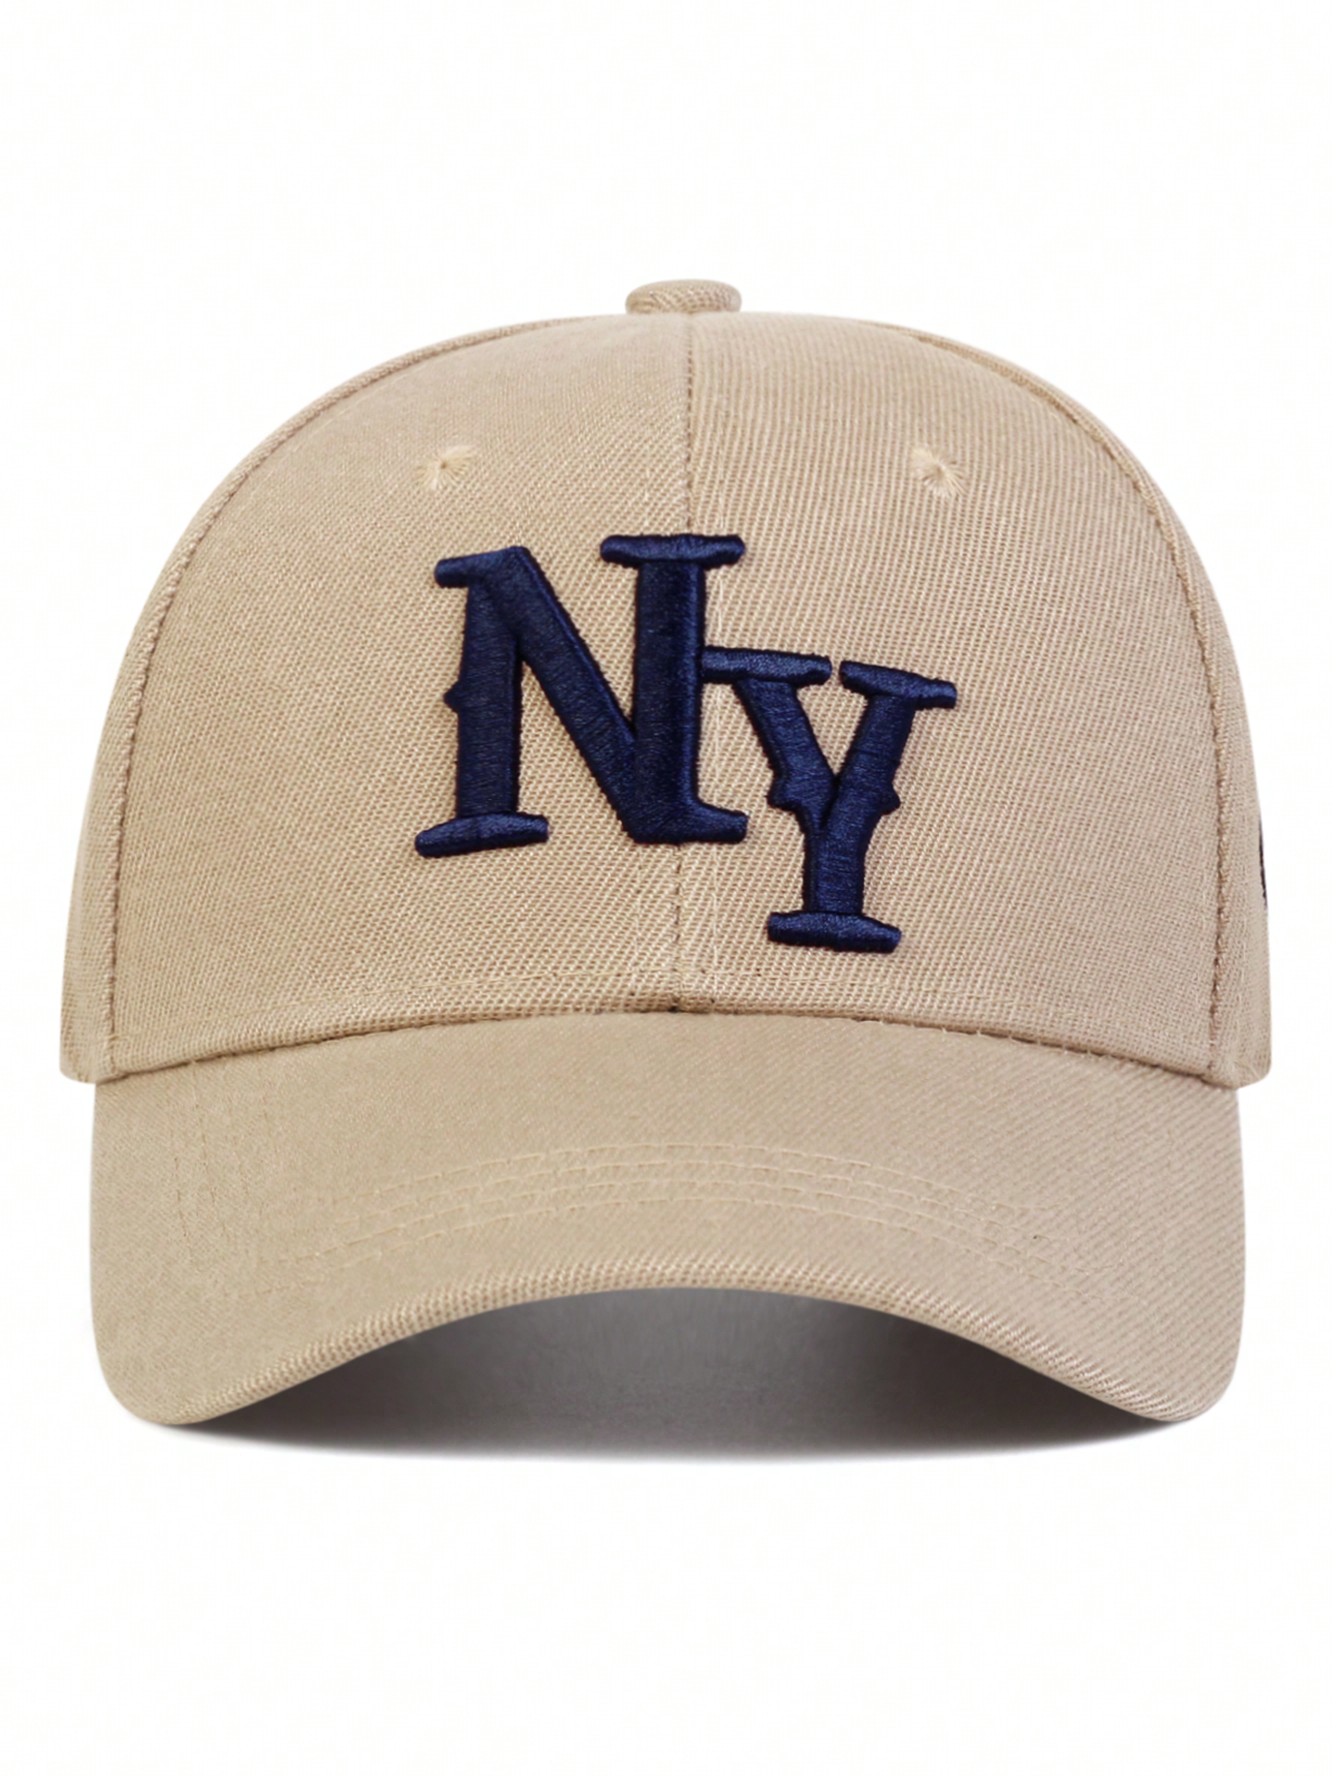 1 шт. мужская бейсболка с вышивкой букв «Нью-Йорк», хаки